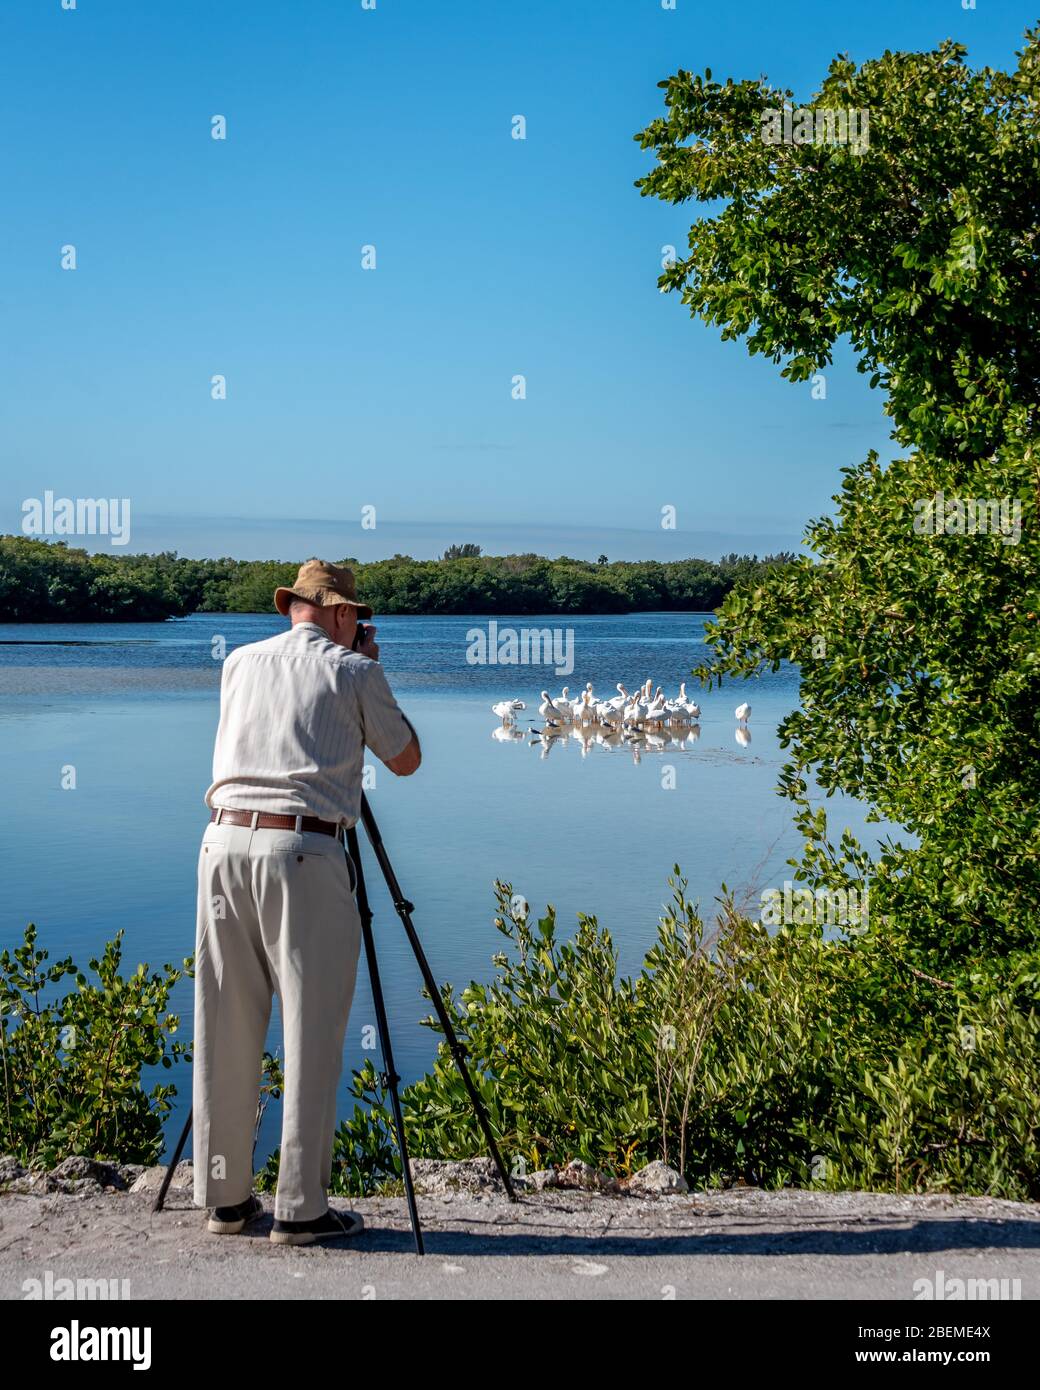 Un homme de tourisme senior photographie des pélicans blancs lors de vacances d'observation des oiseaux en Floride, lors de la visite de Ding Darling Wildlife Refuge sur l'île de Sanibel. Banque D'Images